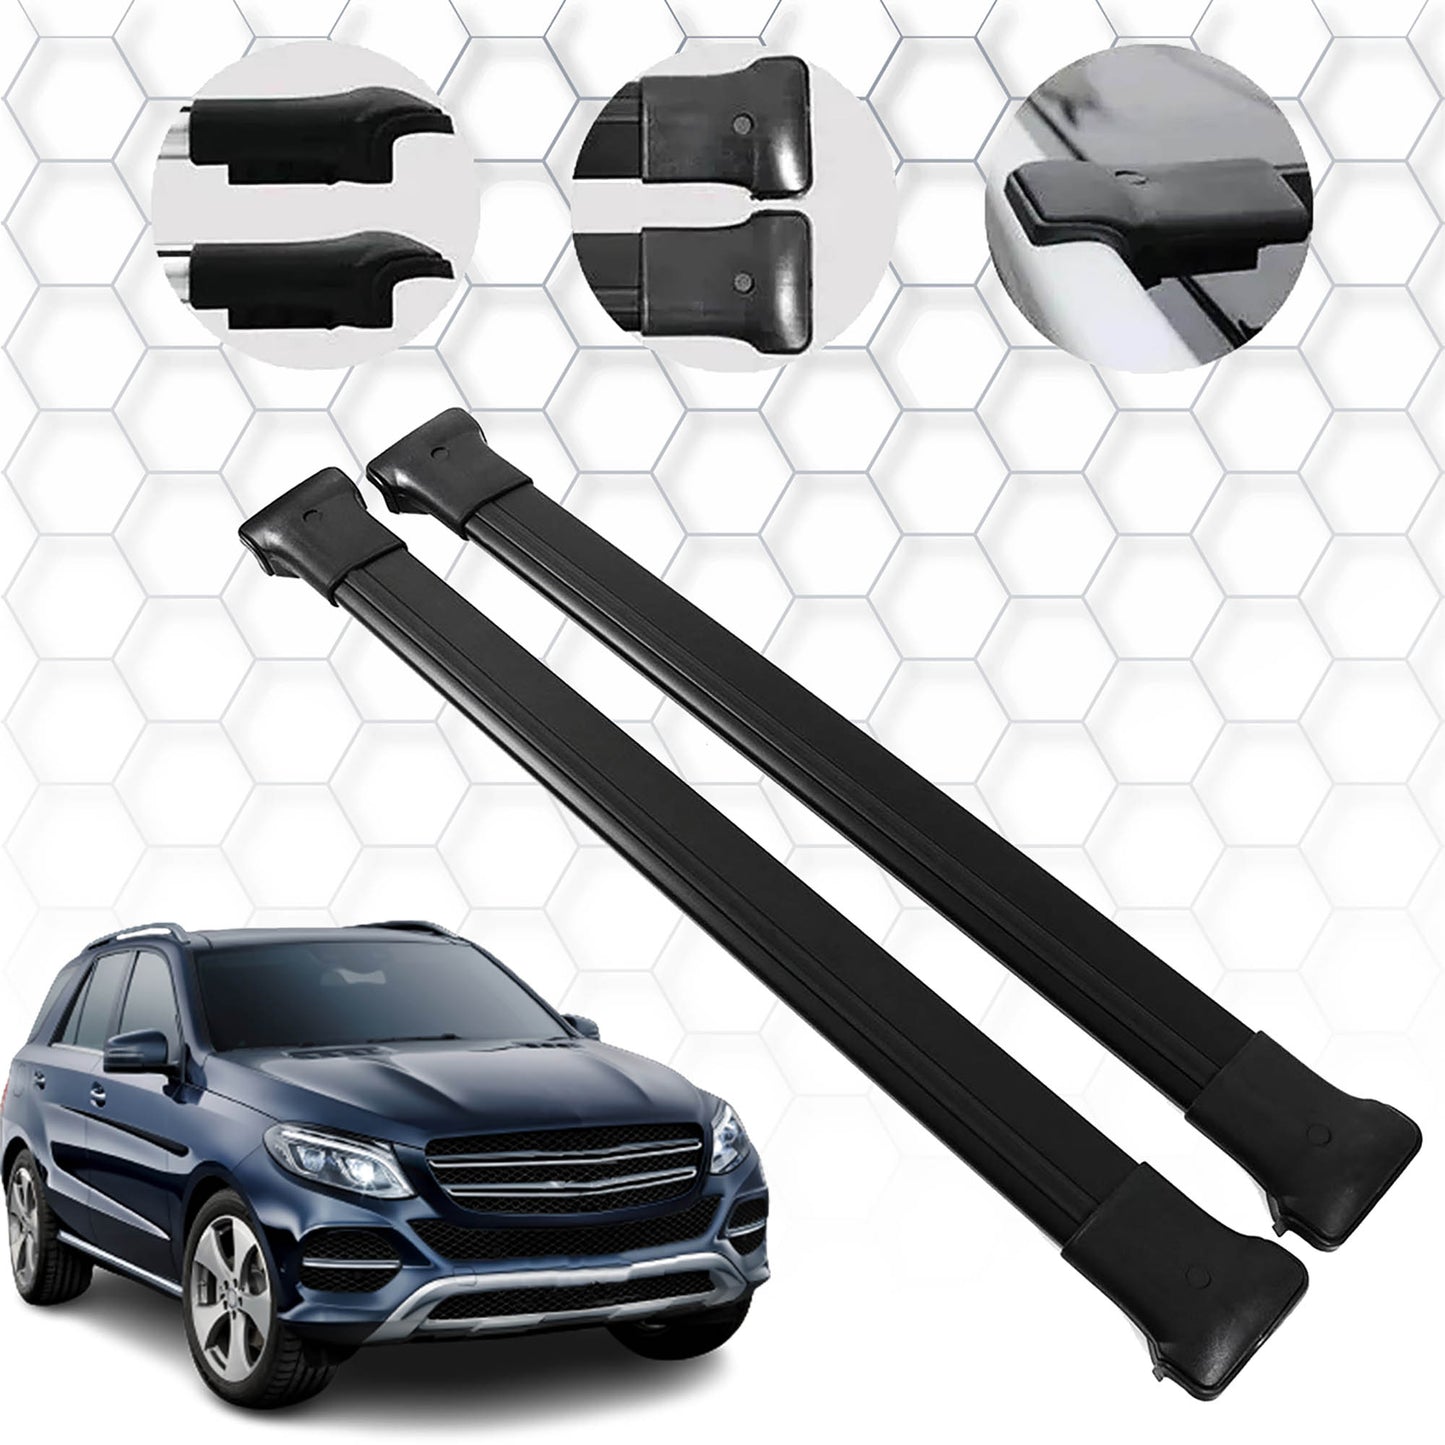 Mercedes GLE Serisi Ara Atkı - Elegance V1 - Siyah Aksesuarları Detaylı Resimleri, Kampanya bilgileri ve fiyatı - 1